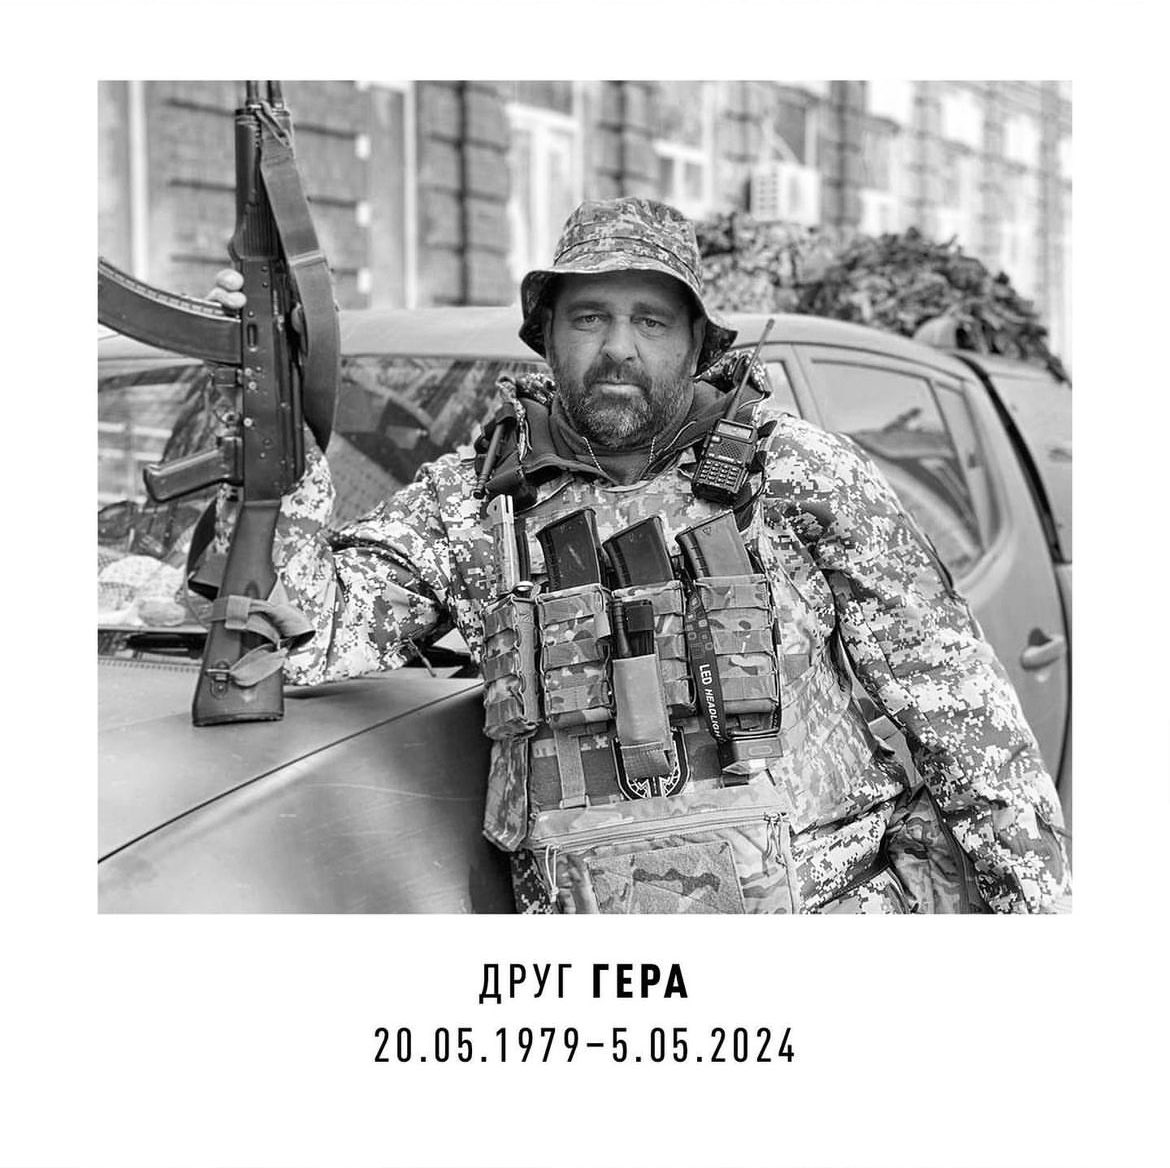 вчора під час роботи на авдіївському напрямку загинув мій побратим Гера, госпітальєр Сергій Казнадій. вічна і світла пам’ять, брате, ти назавжди в наших серцях. честь 🫡